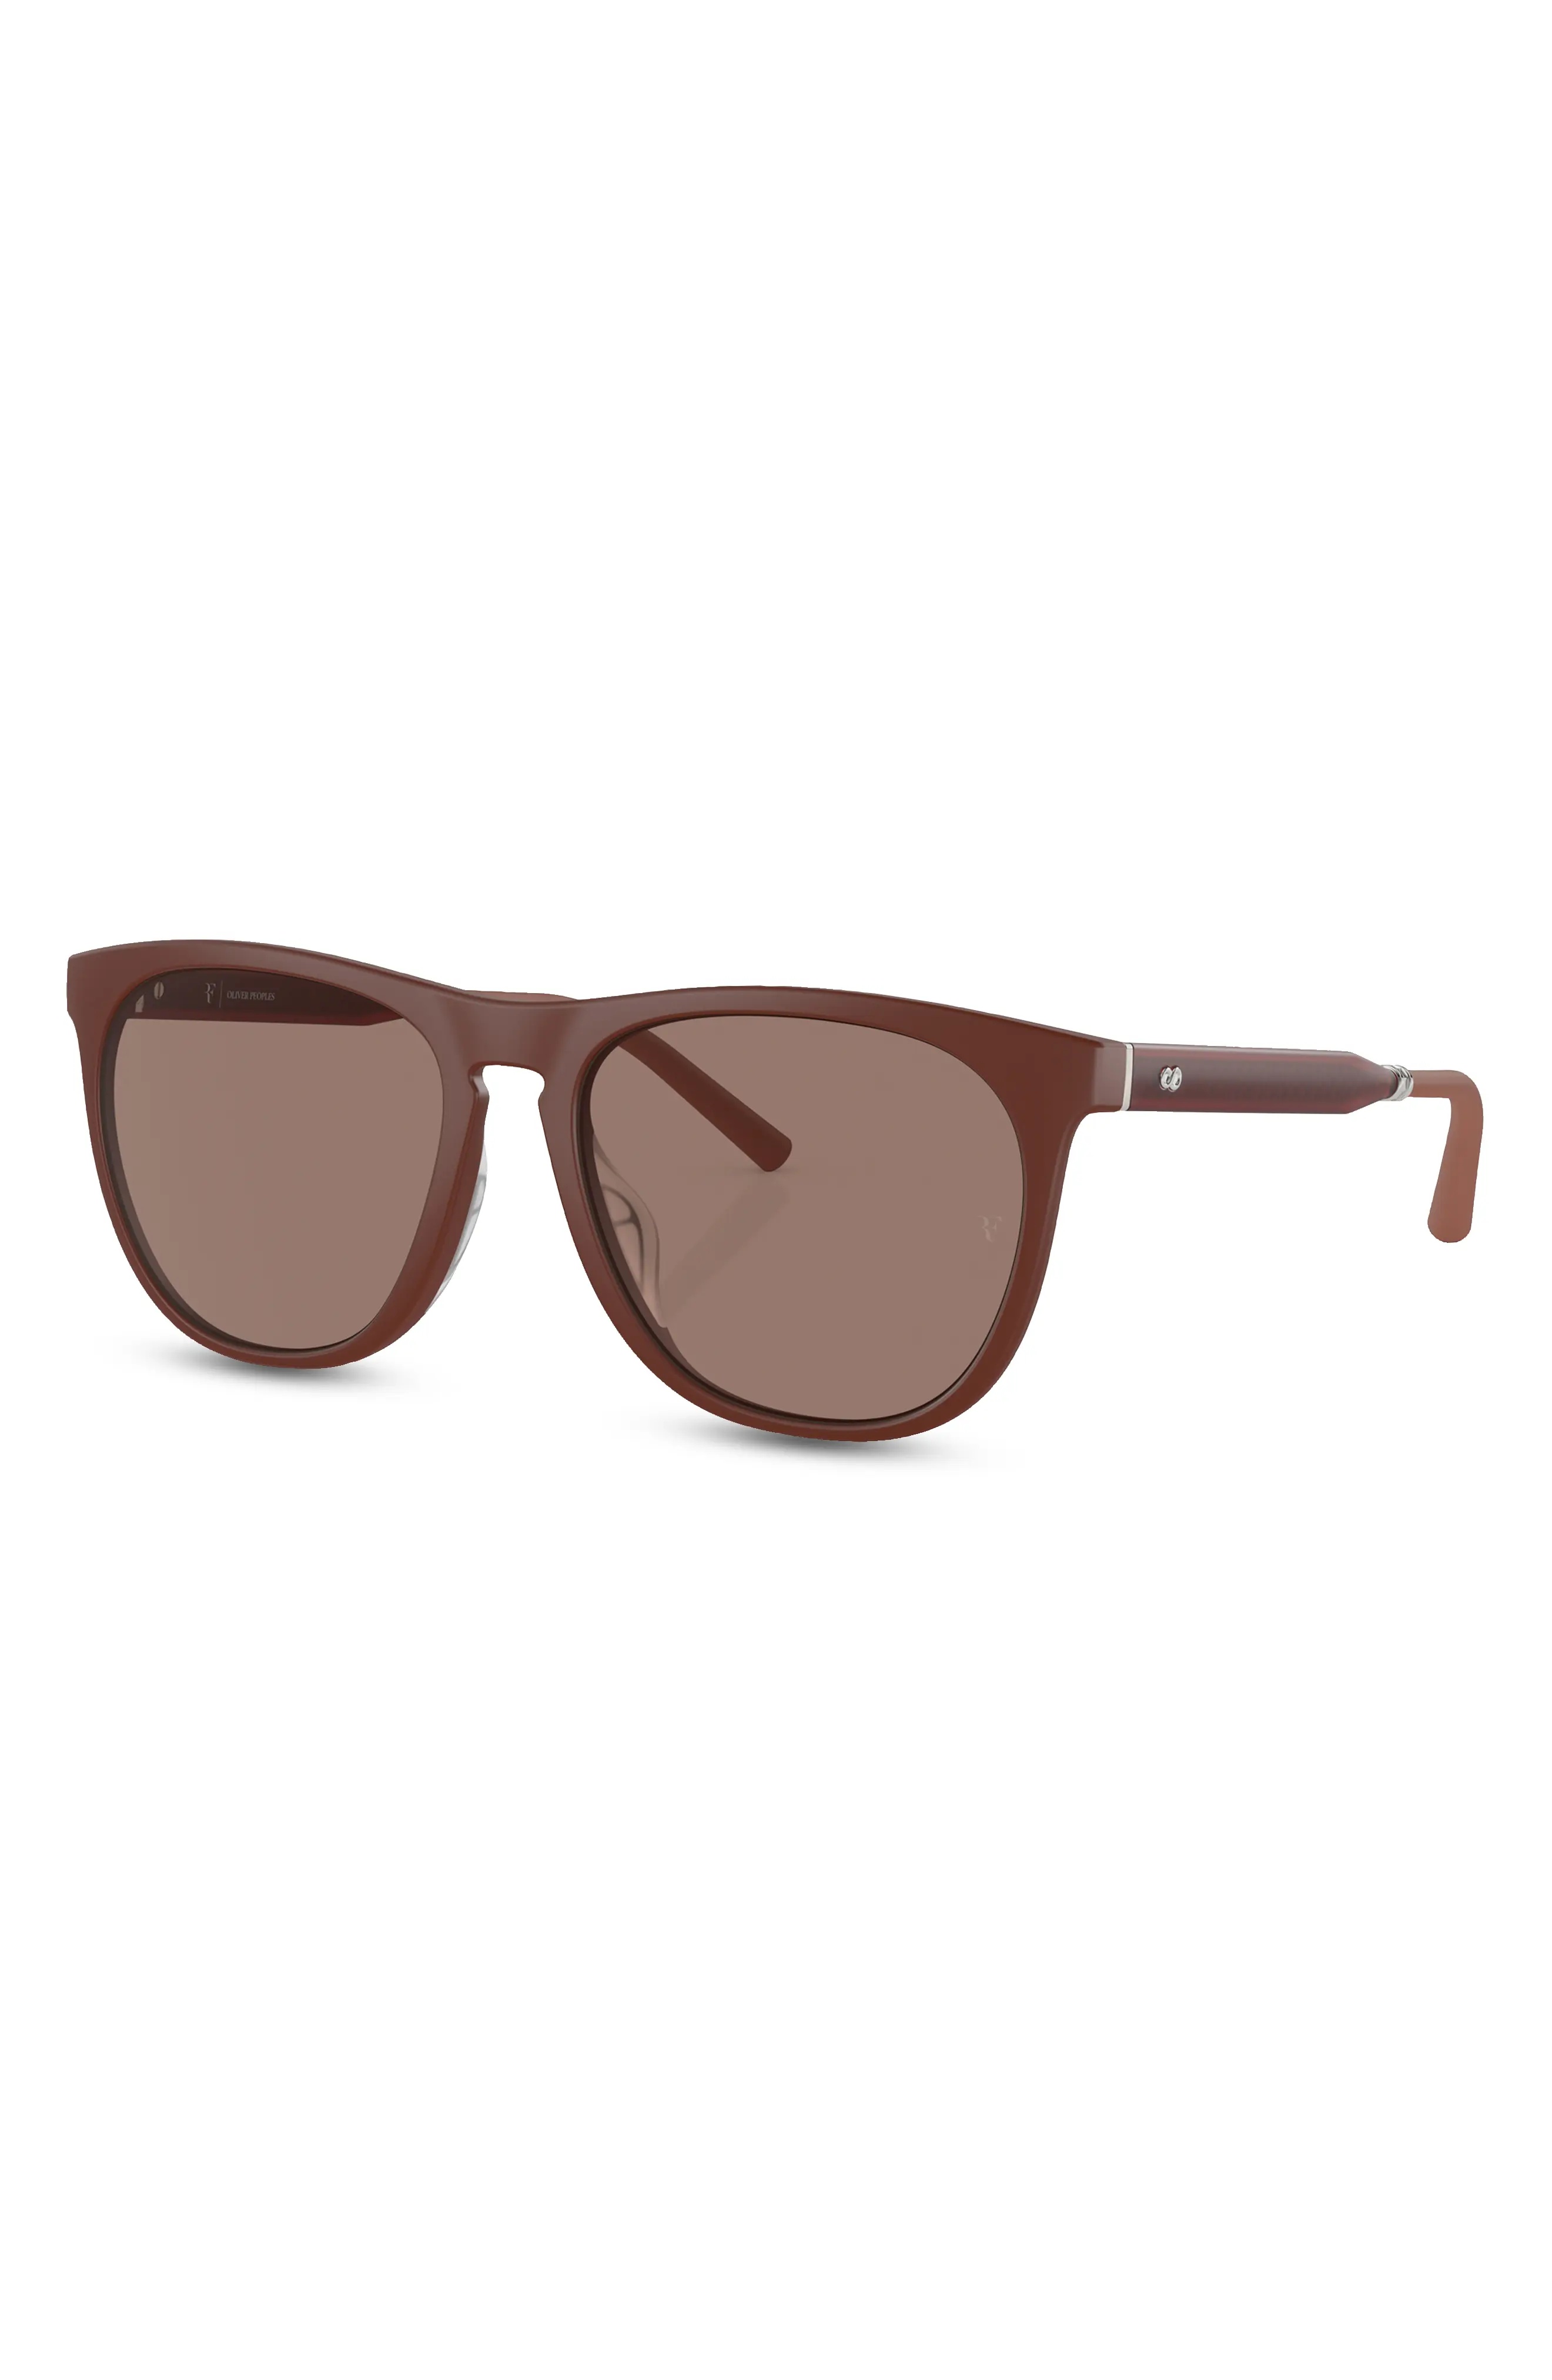 x Roger Federer R-1 55mm Irregular Sunglasses - 2